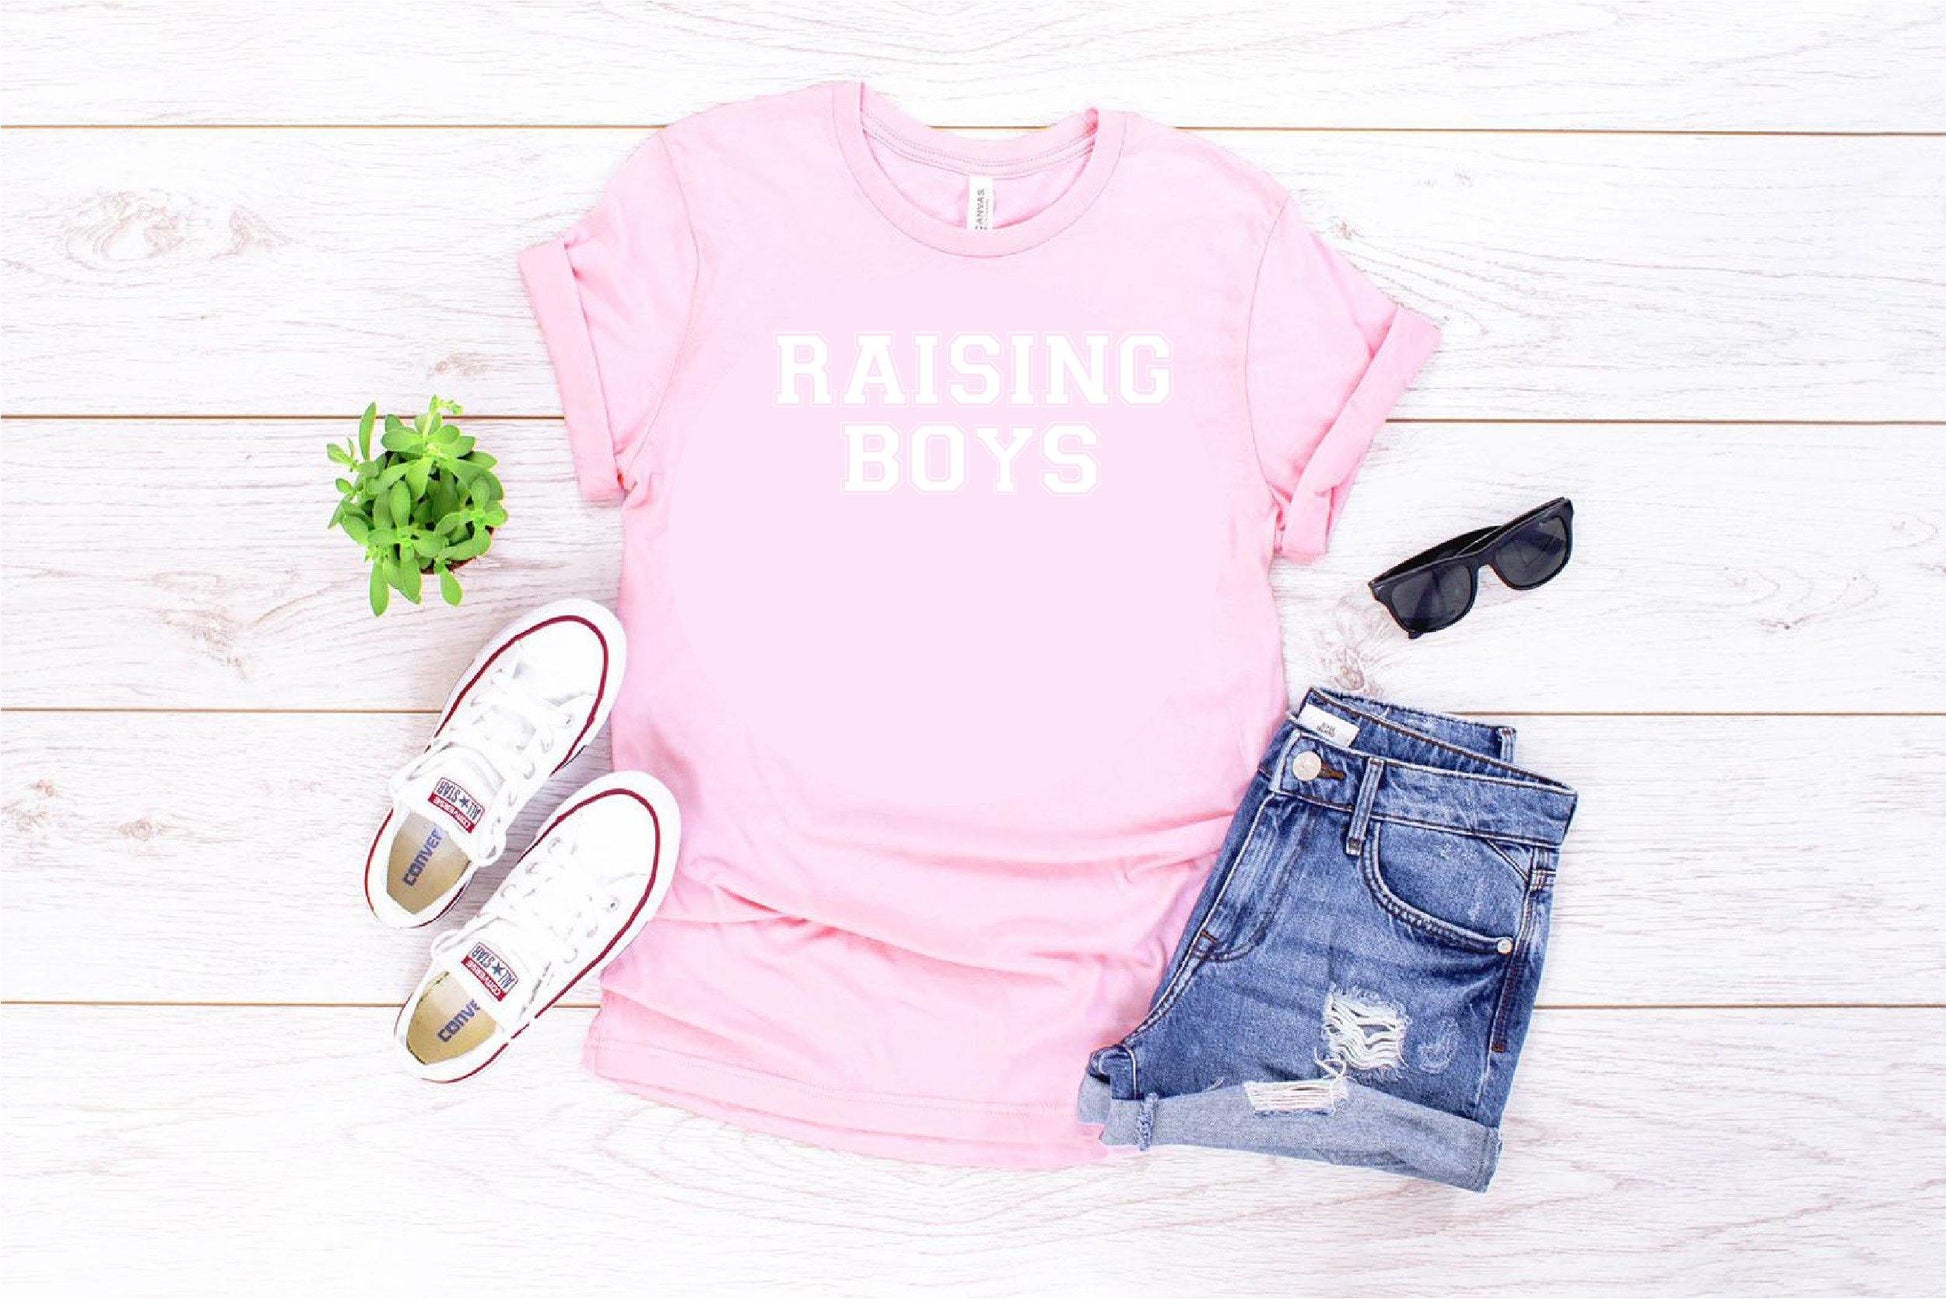 Mum Of Boys Raising Boys Slogan T-shirt